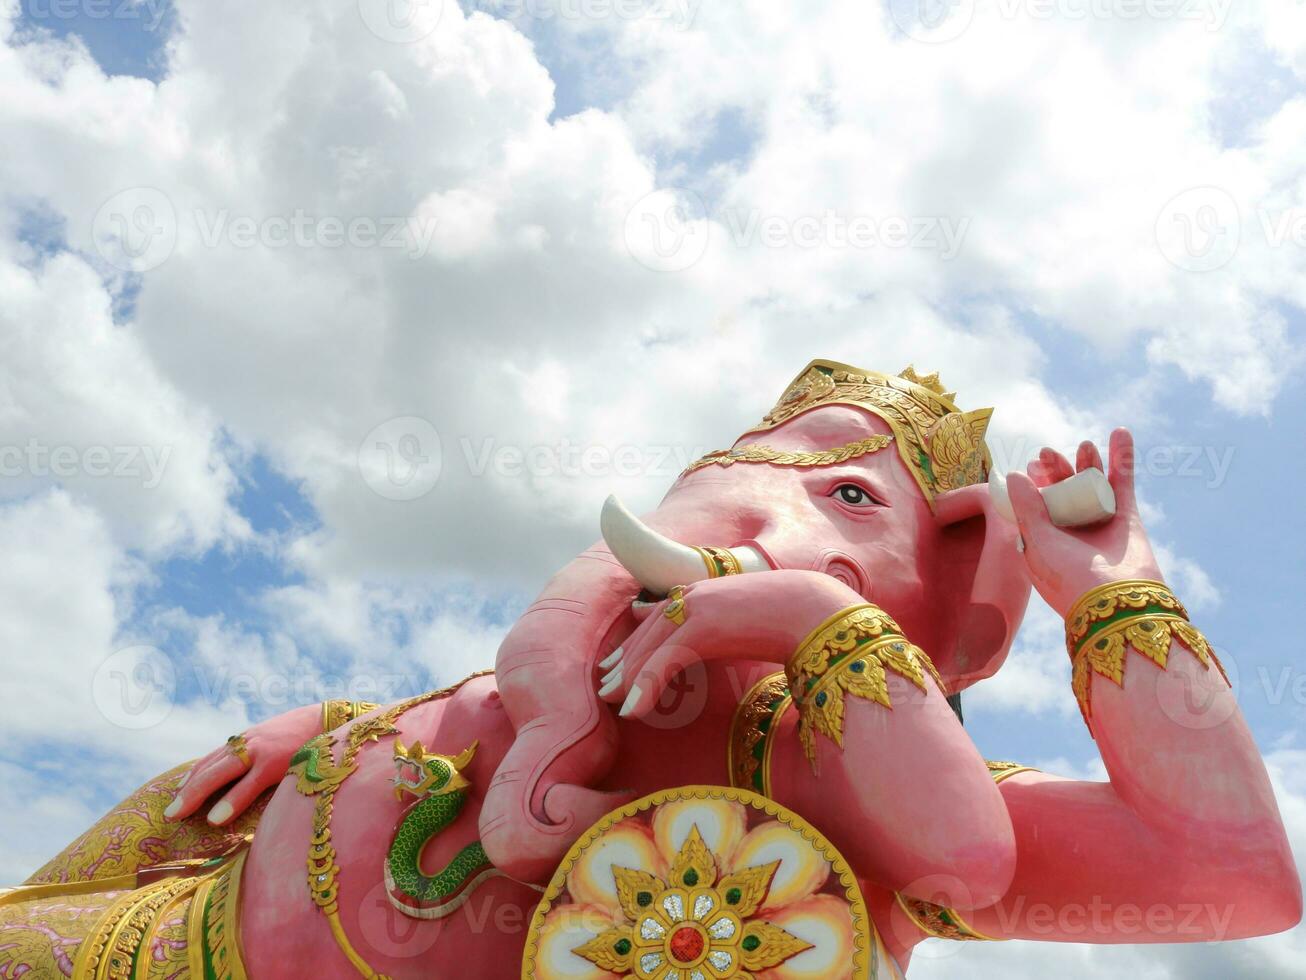 brillante rosado pintado ganesha hormigón estatua reclinar postura y nubes en cielo fondo, tailandia foto